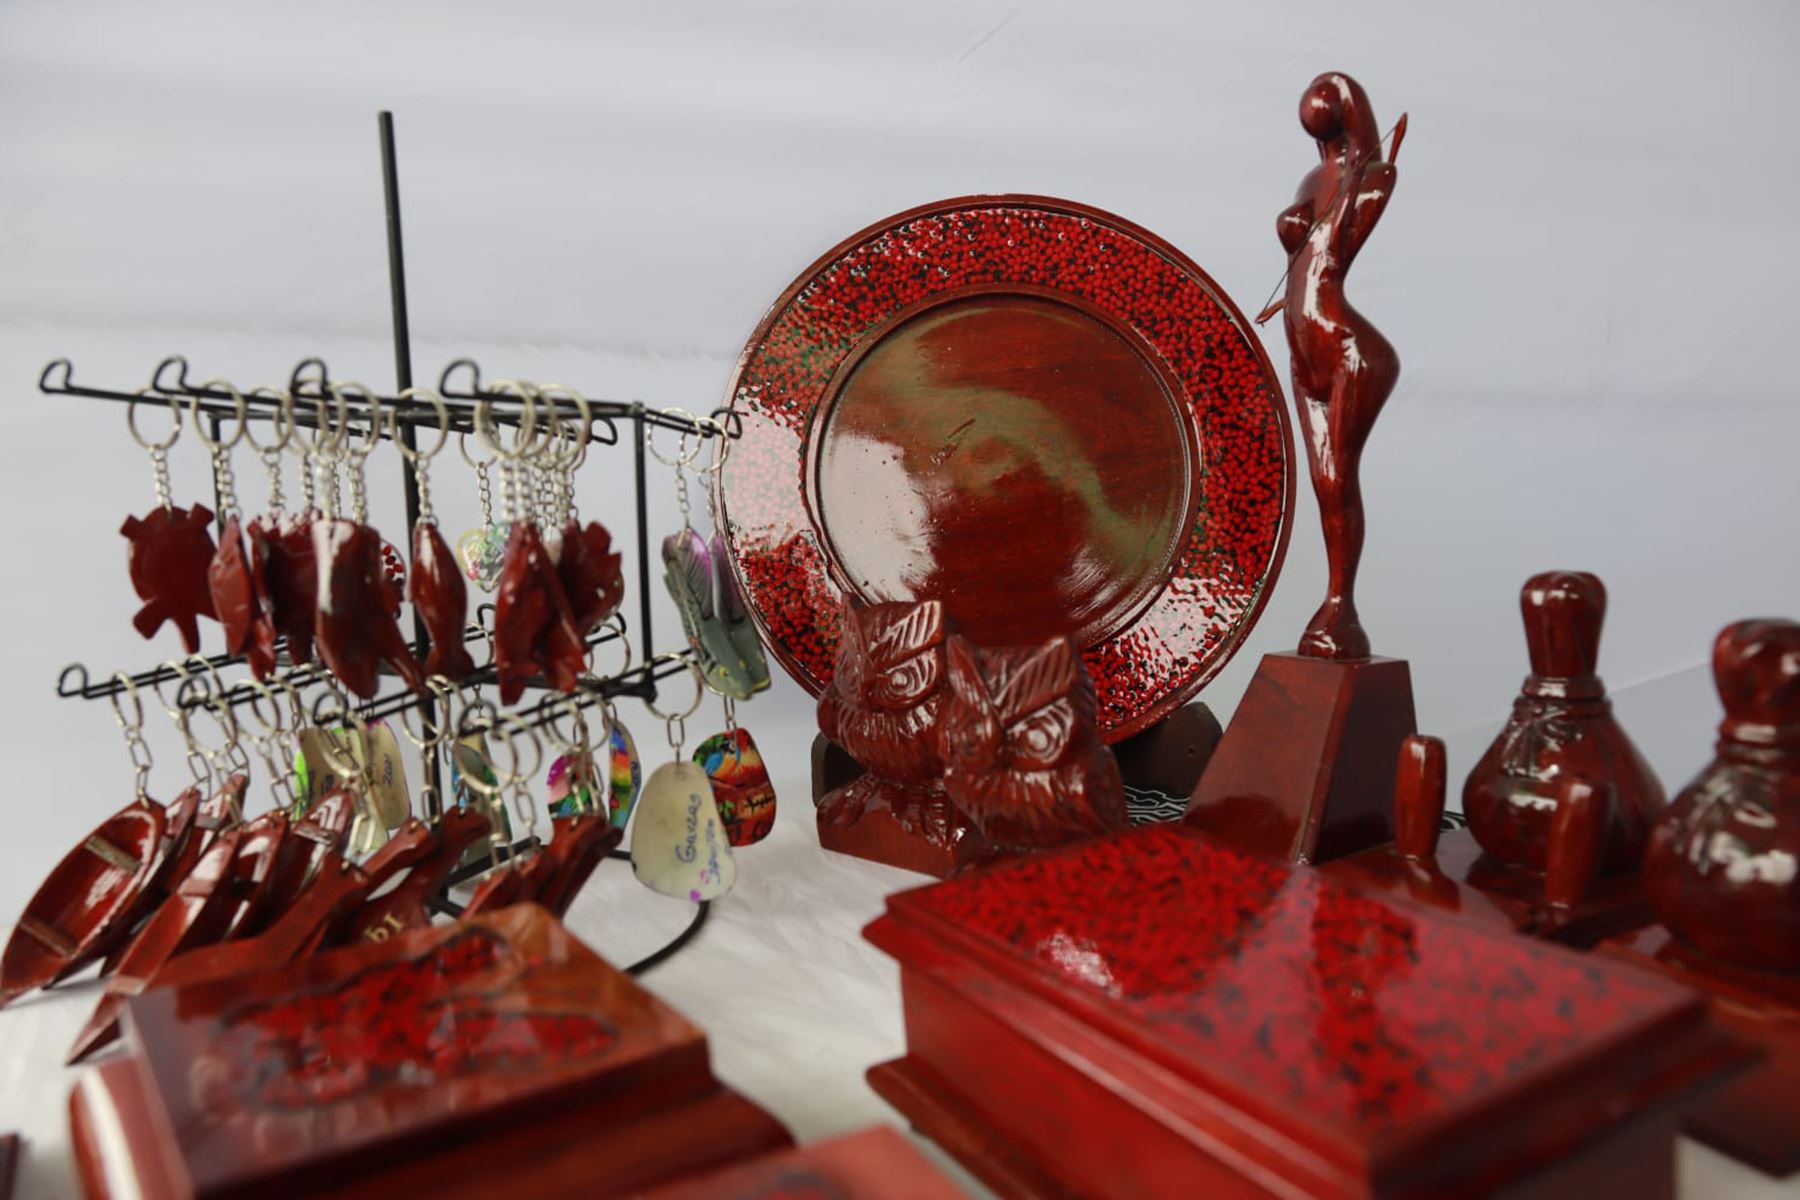 Cerca de treinta artesanos de Loreto,Amazonas,Ucayali y San Martín presentan sus mejores obras en el "Evento Empresarial de Artesanía Macroregional del Oriente",que promueve el Mincetur.
Foto: Mincetur